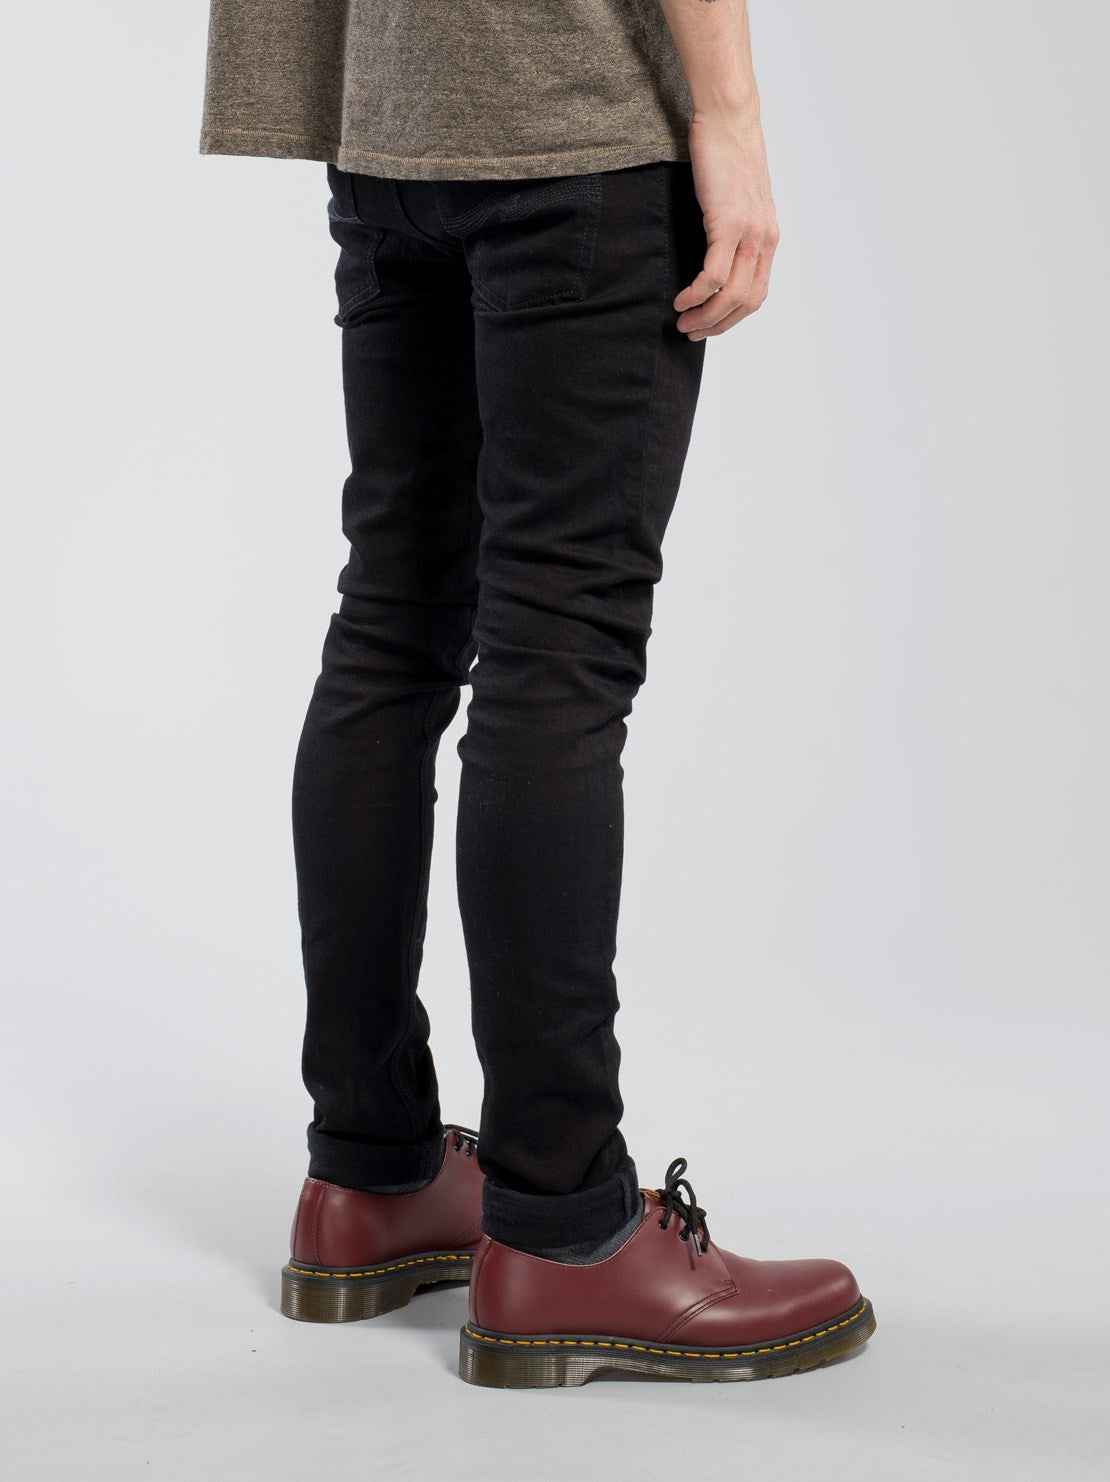 Stå sammen Odds Larry Belmont Nudie Jeans Tight Long John Black Black - Mildblend Supply Co